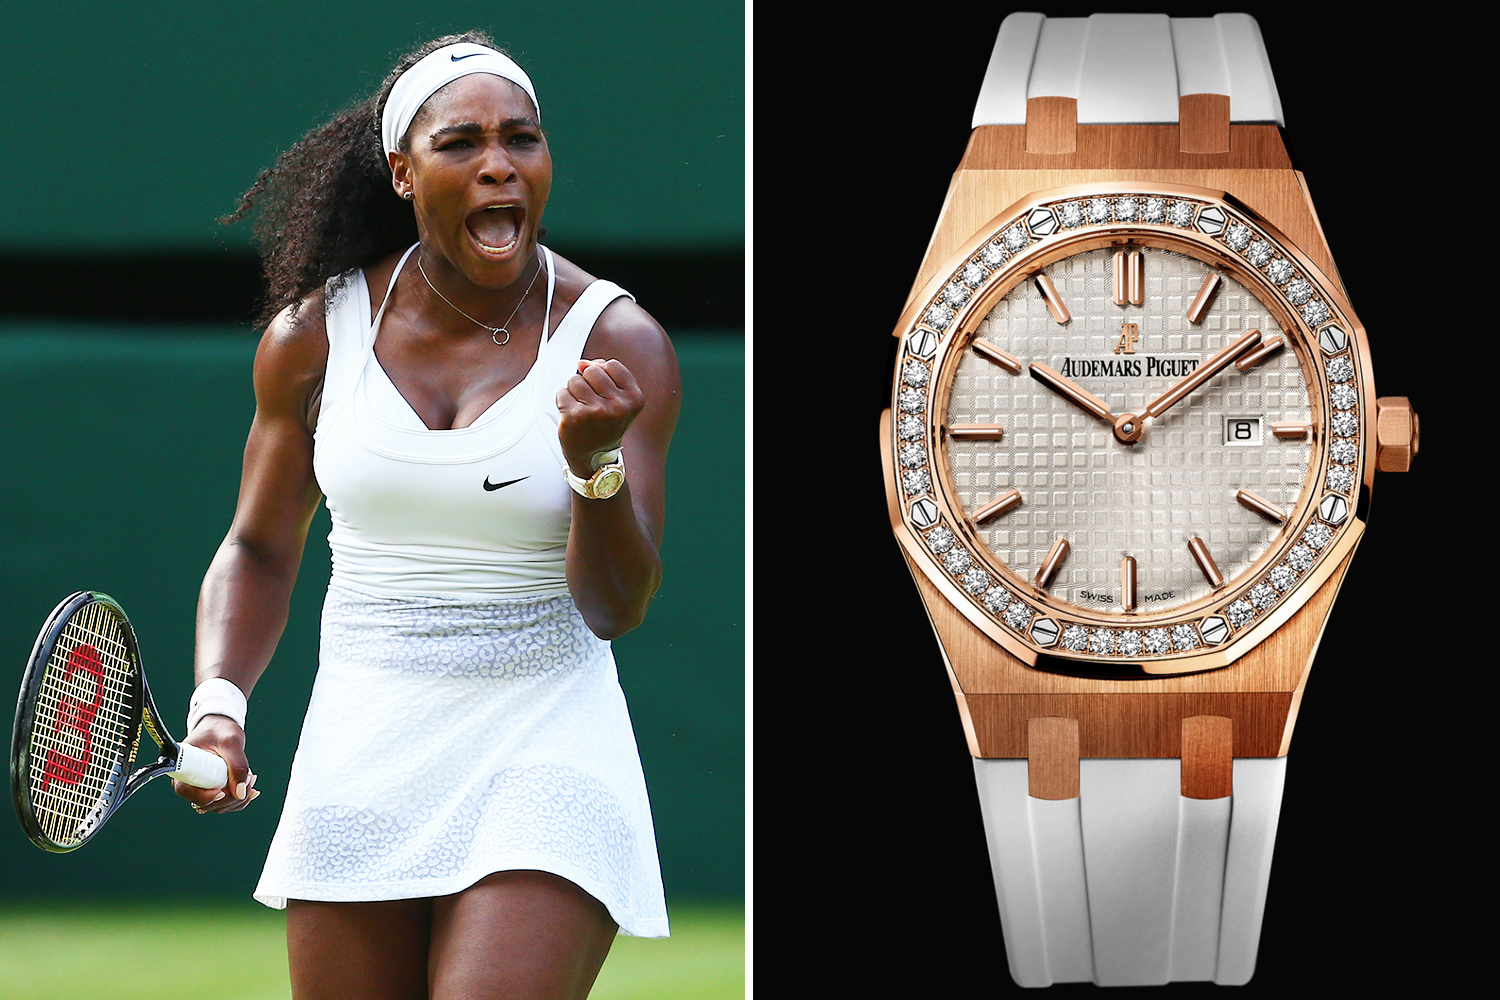   Serena Williams ist regelmäßig mit einer Audemars Piguet Royal Oak Shore Uhr auf dem Platz zu sehen